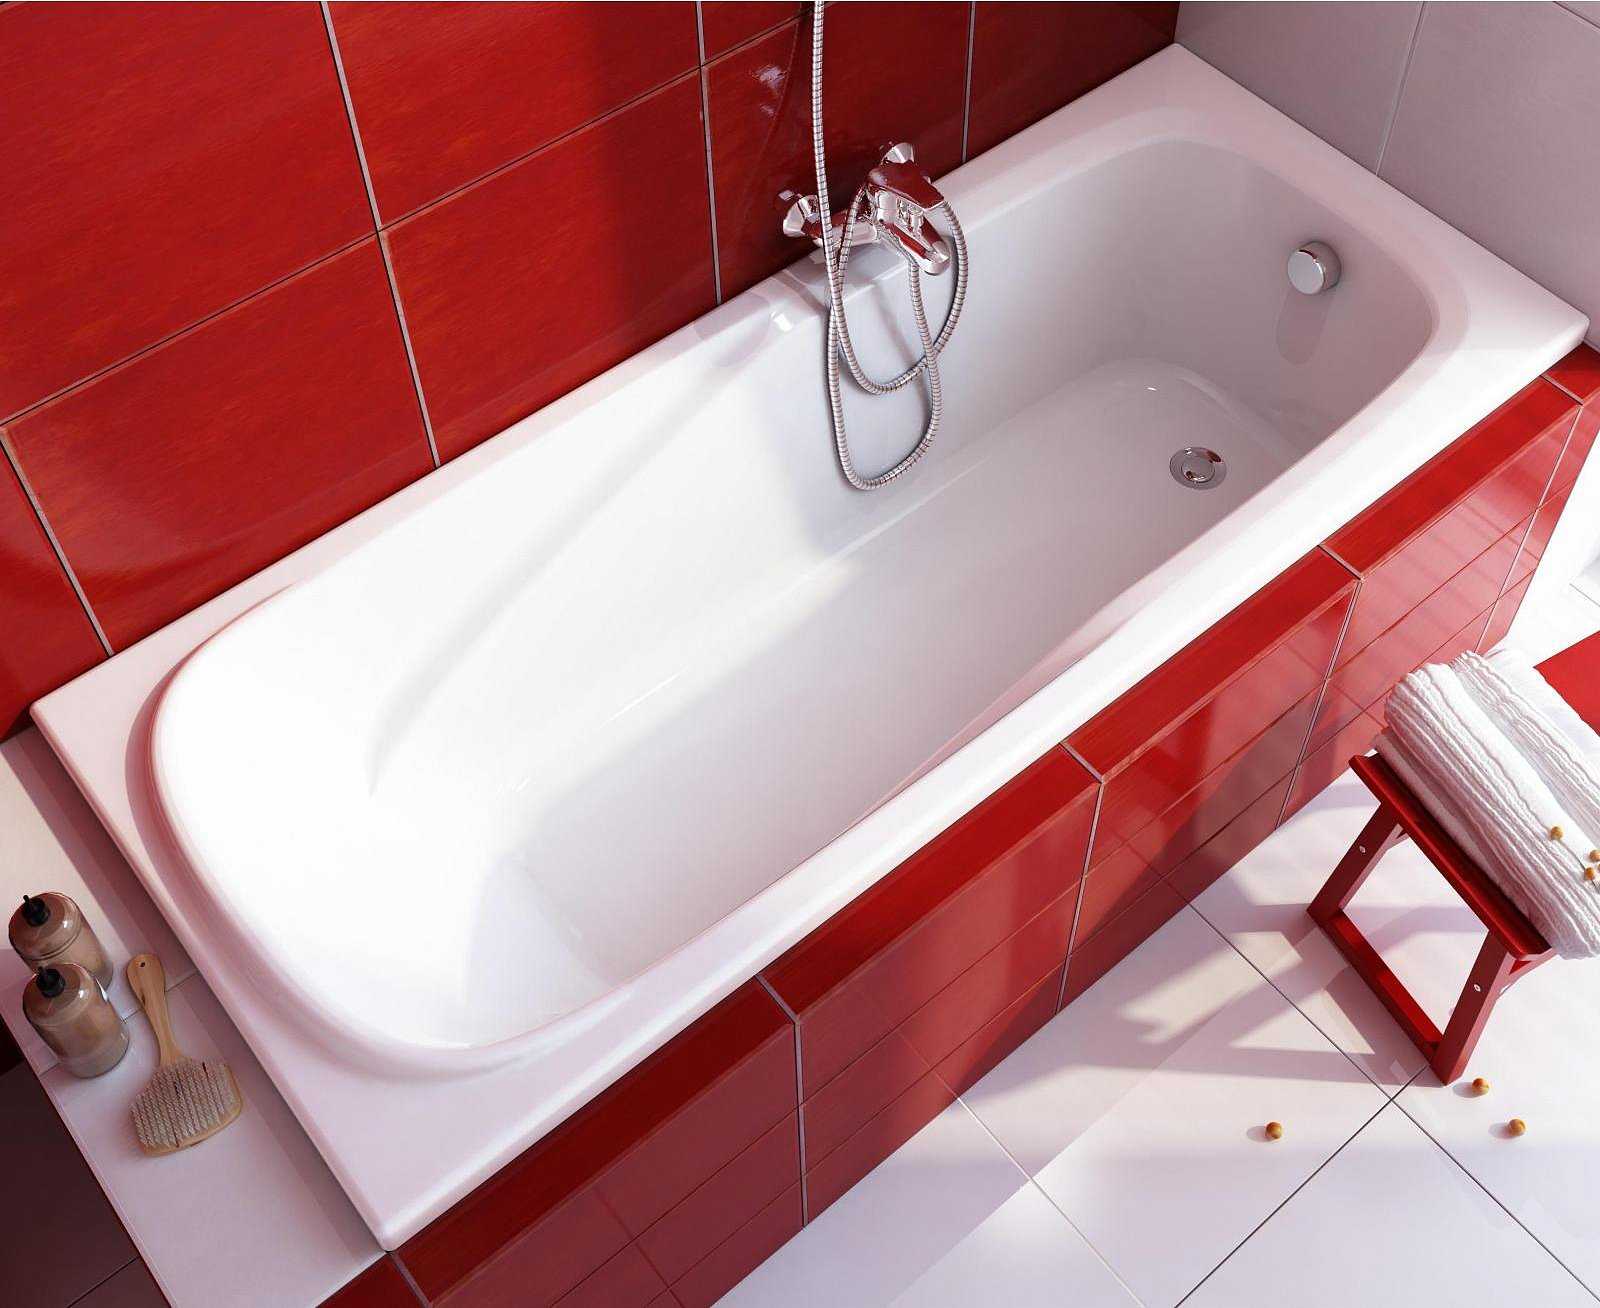 Какую ванну лучше выбрать : чугунную, акриловую или стальную? - стройка гид